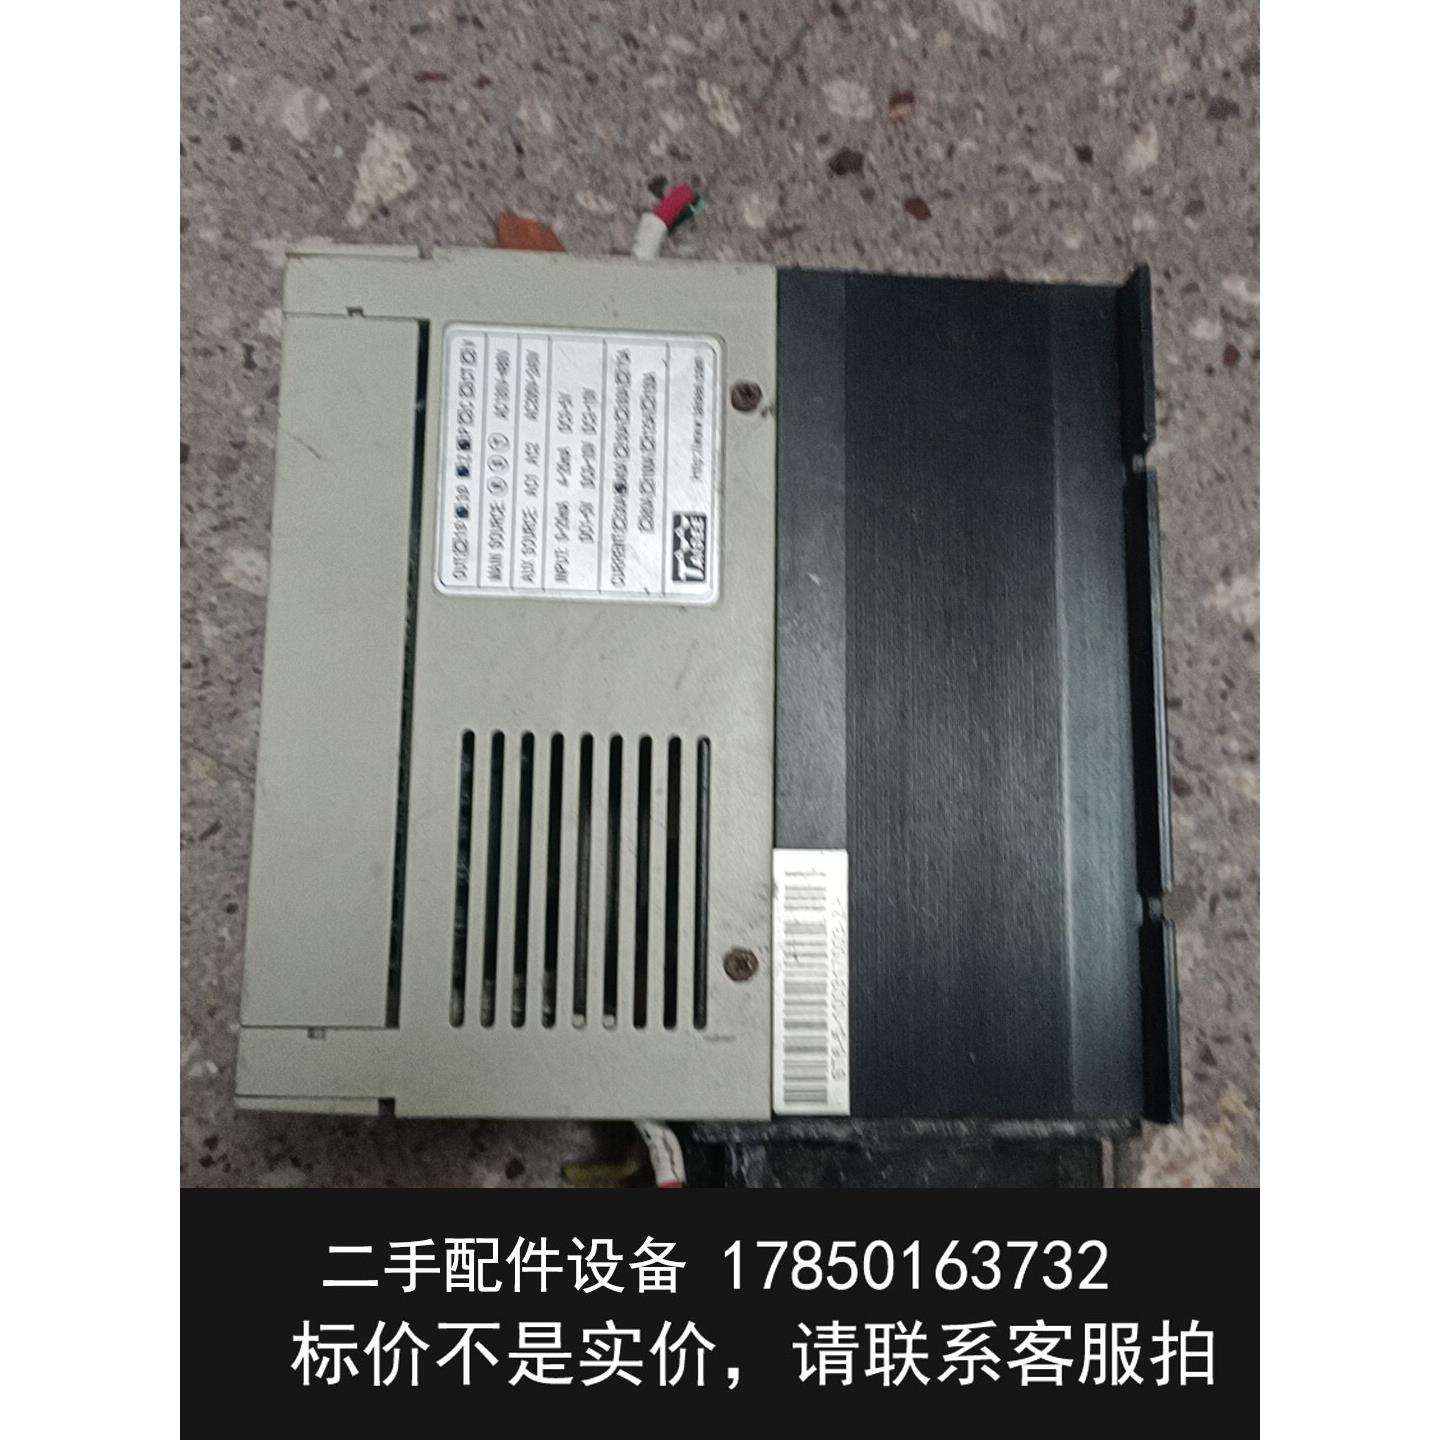 议价台湾泰矽/TAISEE电力调整器ST6-5-4-040ZP实